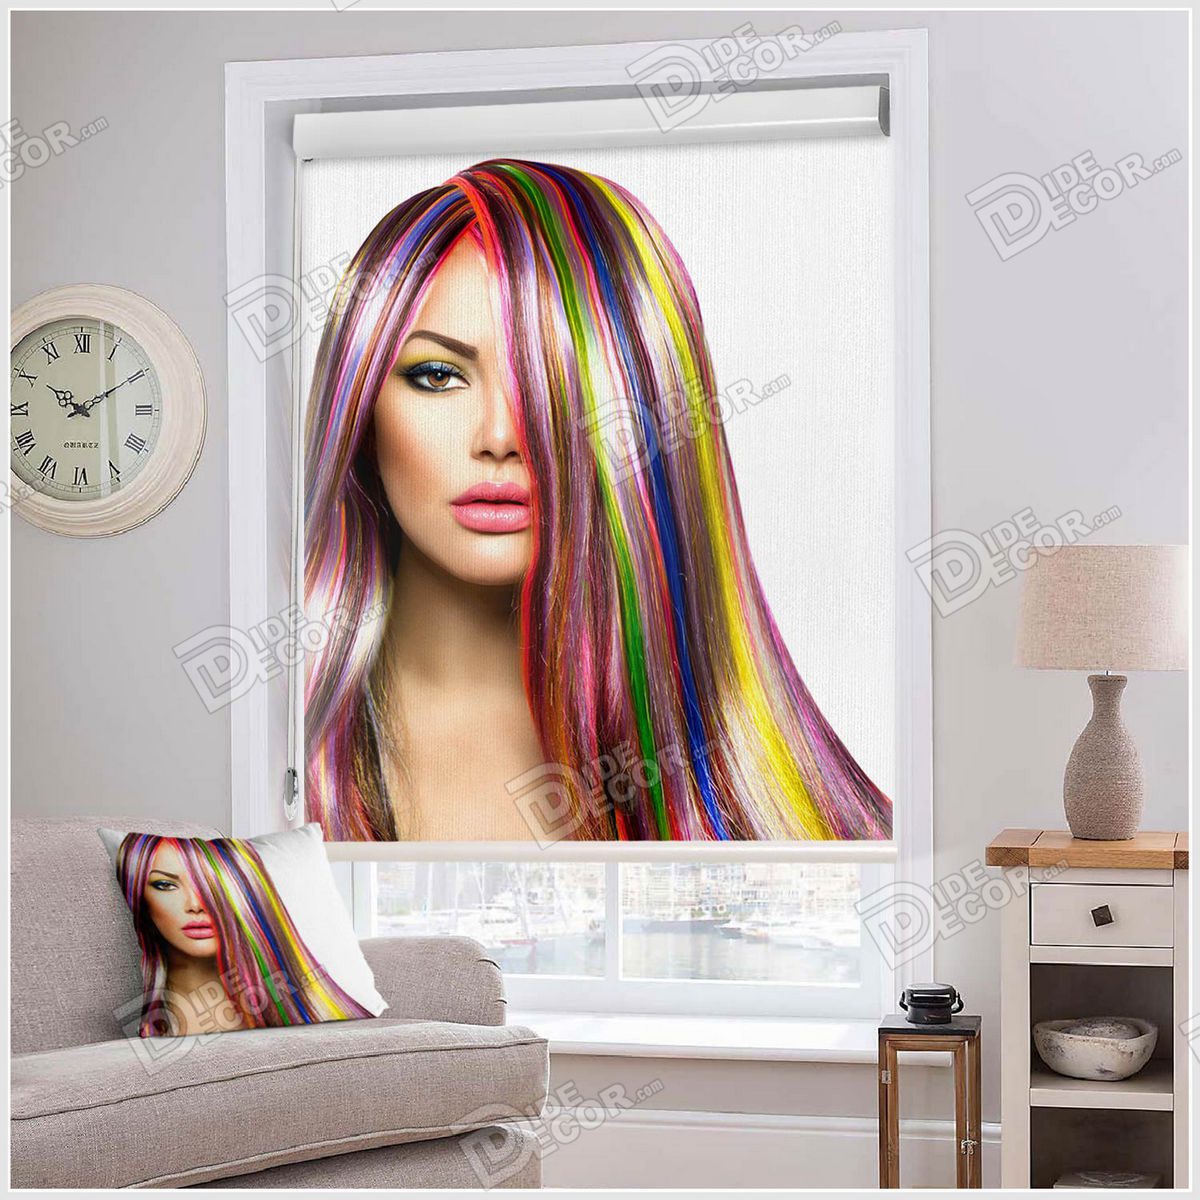 پرده شید چهره کد SSP-33 با تصویر صورت زن با موی رنگارنگ بوده و این مدل مناسب اتاق خواب دخترانه و آرایشگاه زنانه و مزون لباس بانوان است